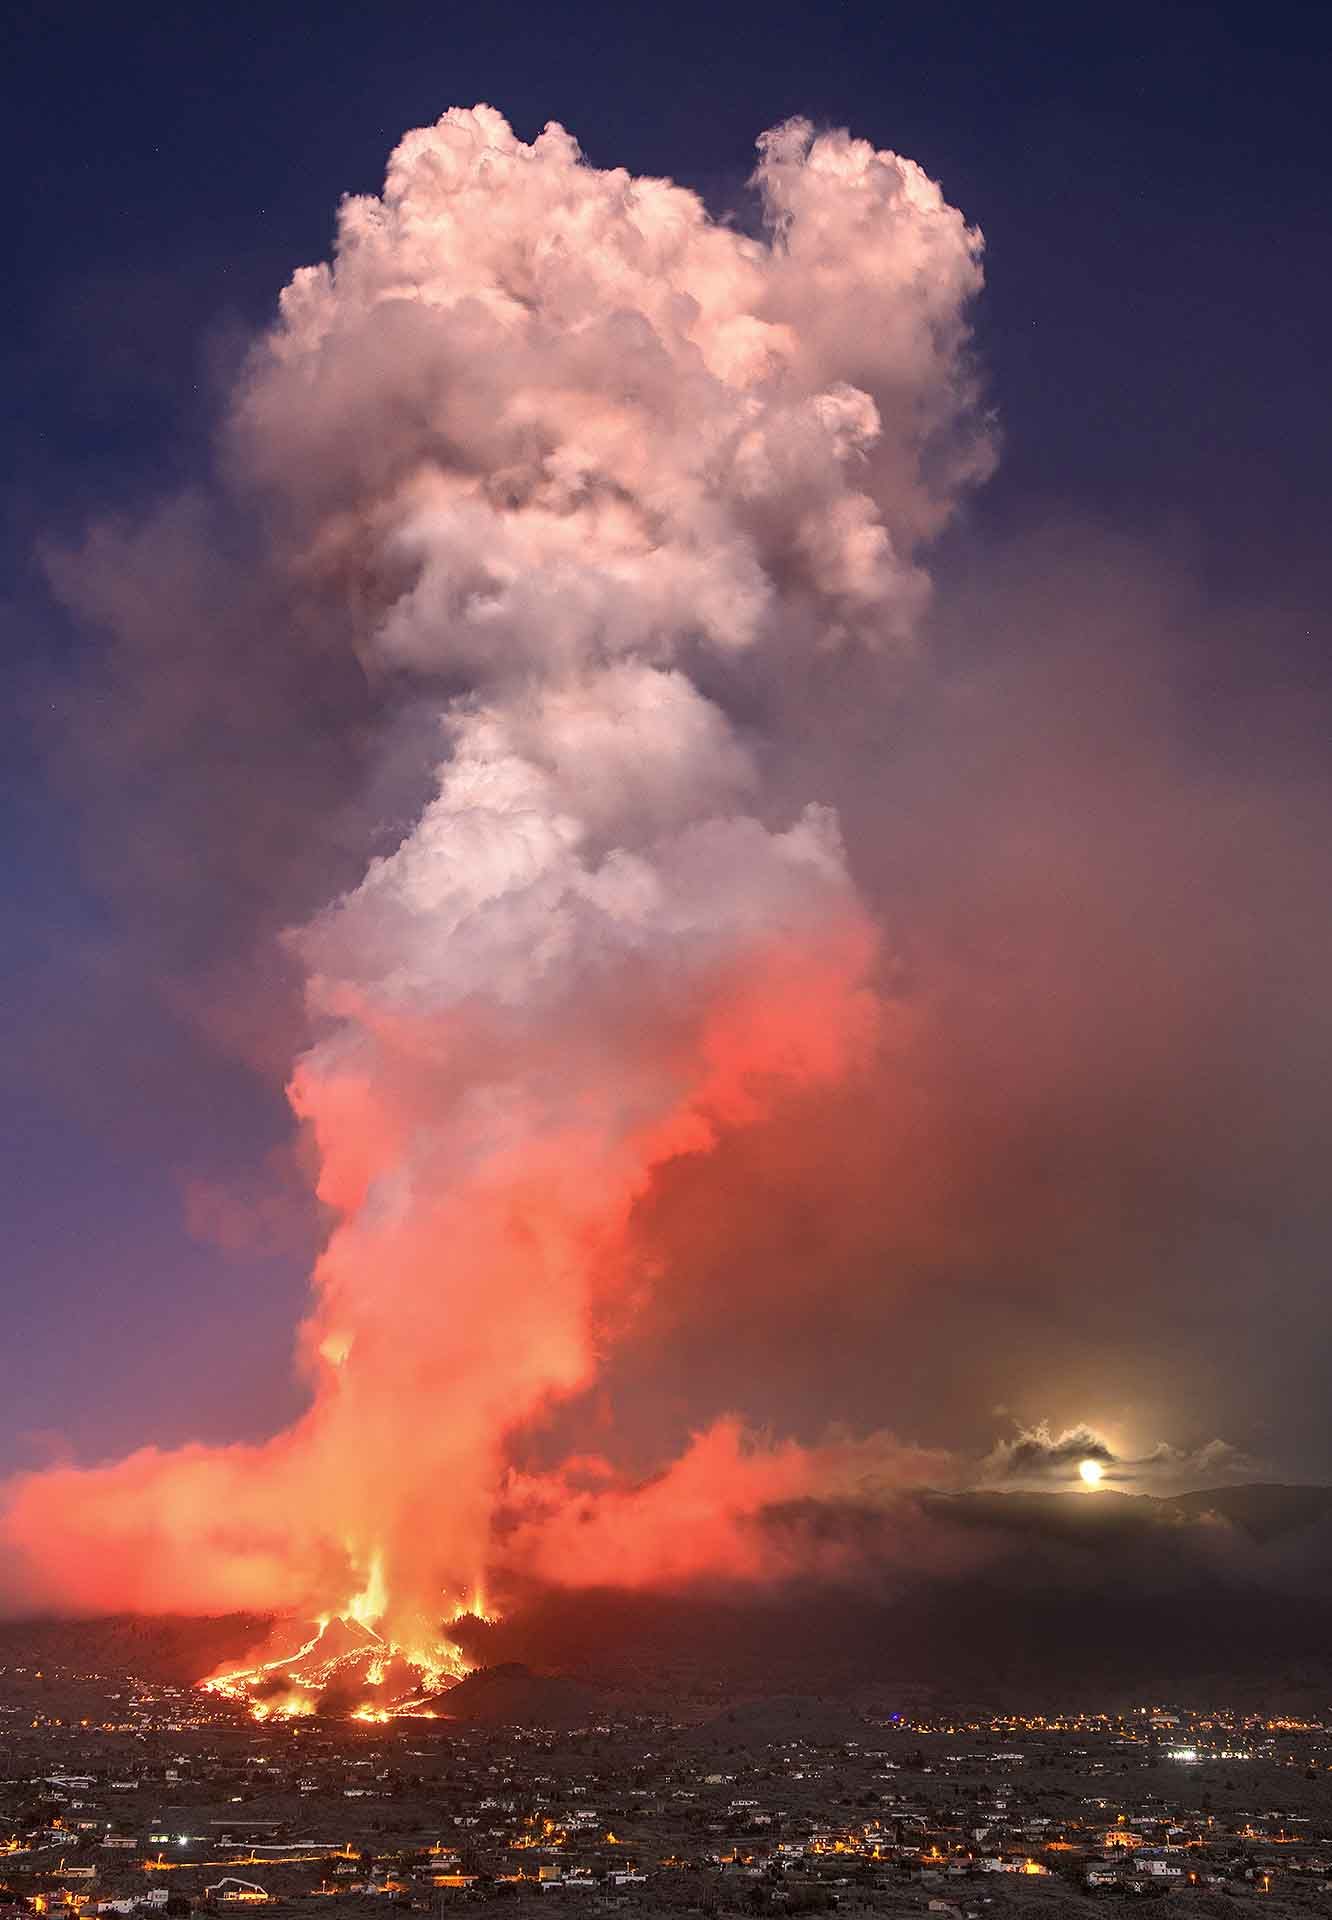 Vista de la columna eruptiva del volcán de La Palma en sus primeras horas arrasando el barrio de El Paraíso (El Paso), mientras la luna llena sale detrás de la montaña (Canarias) / Foto: Saul Santos